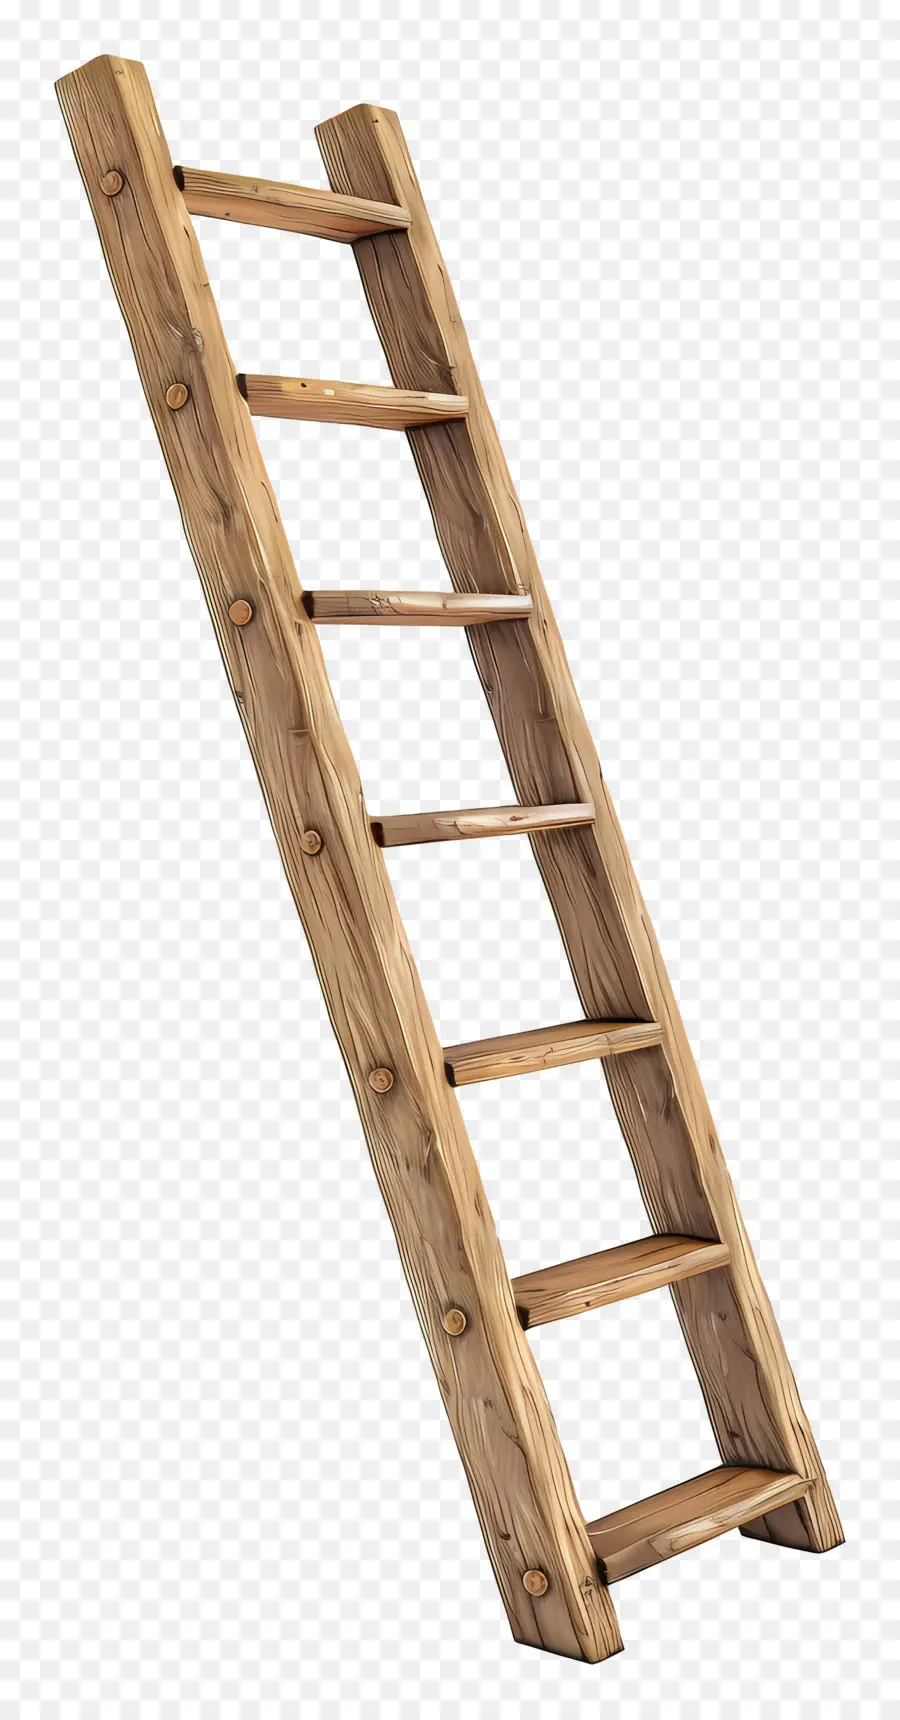 scala in legno - La scala di legno forte e ben realizzata con due pioli